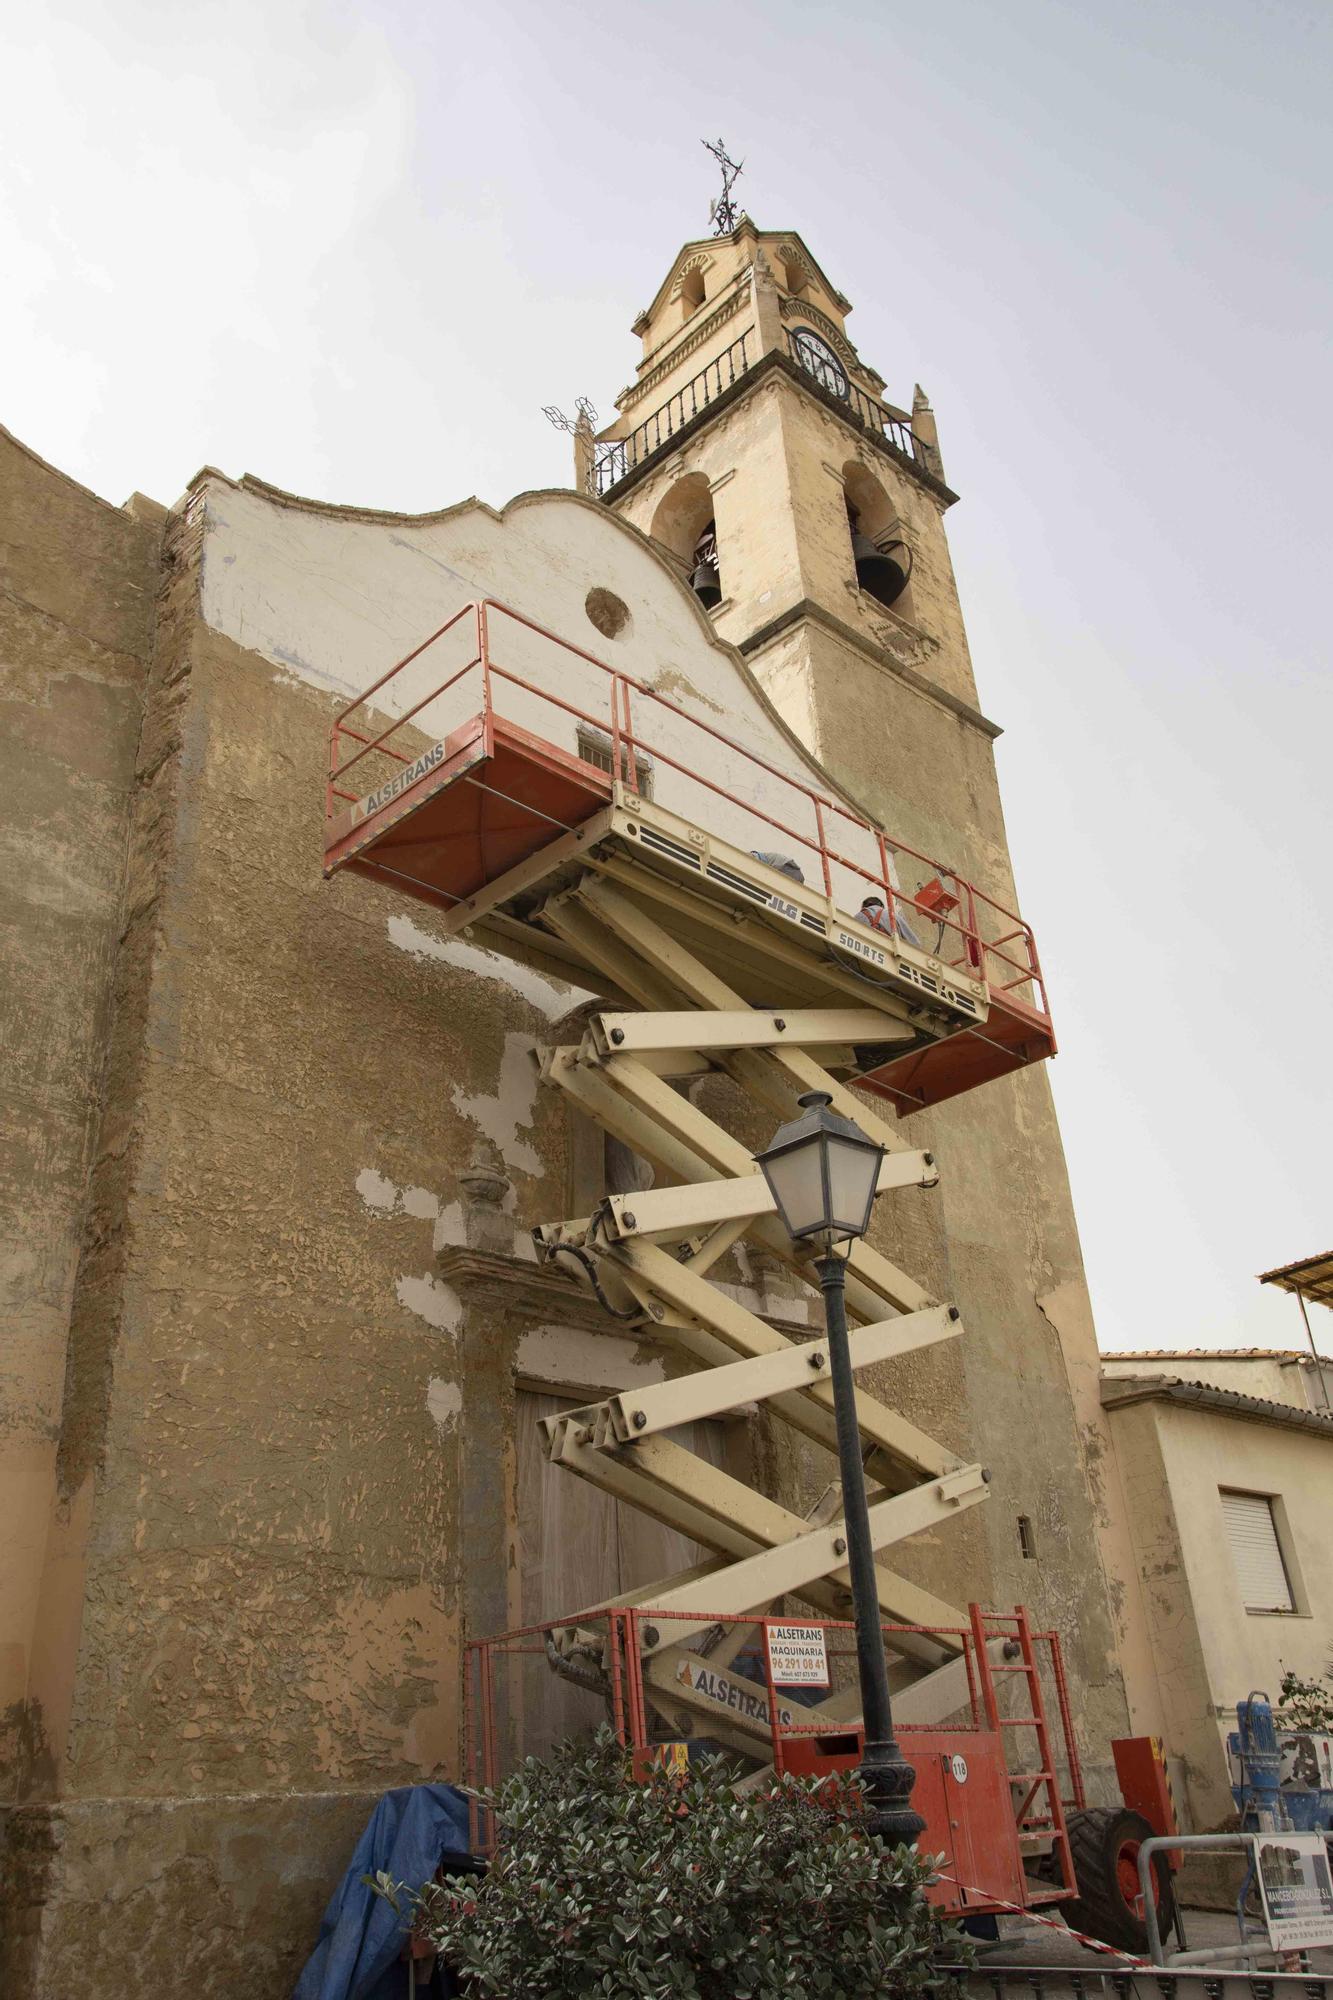 Rehabilitan la fachada y el campanario de la iglesia de Otos gracias a las aportaciones de los feligreses